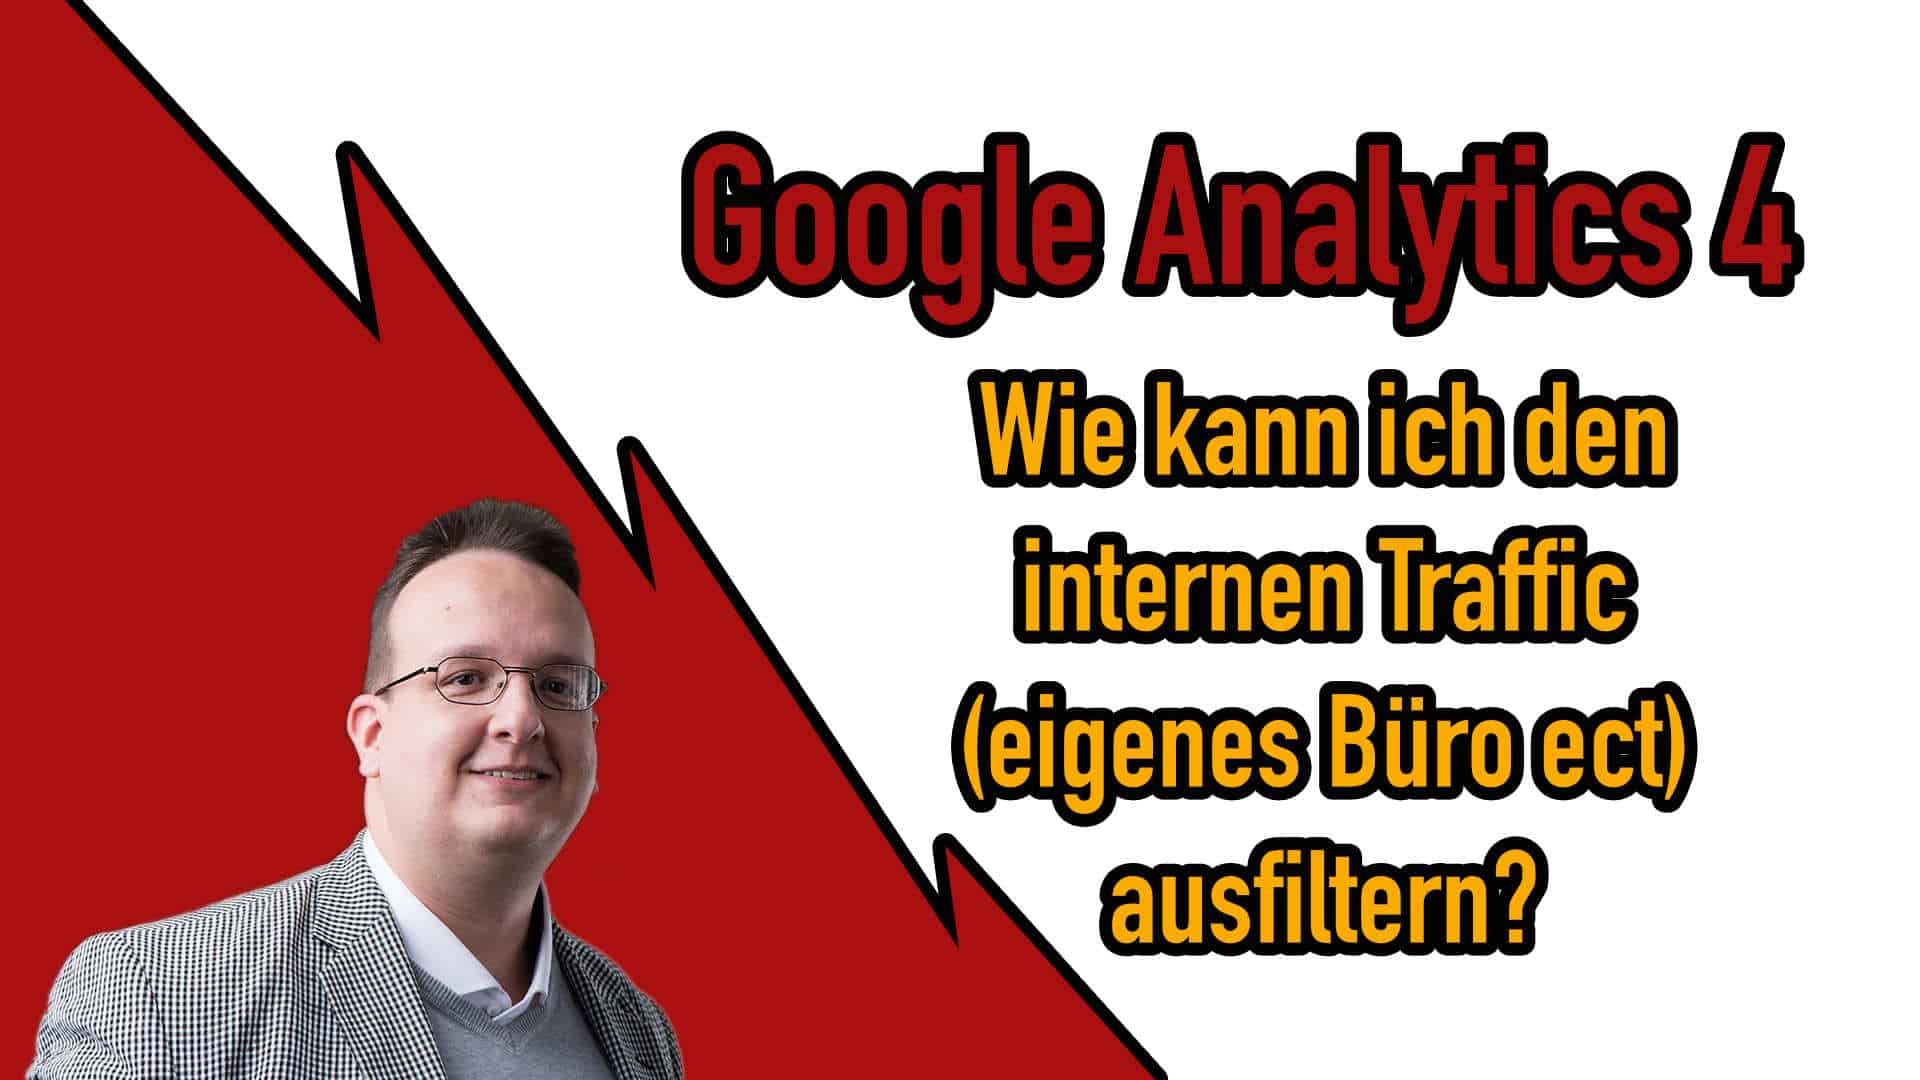 Google Analytics 4: Wie kann ich den internen Traffic ausschliessen?